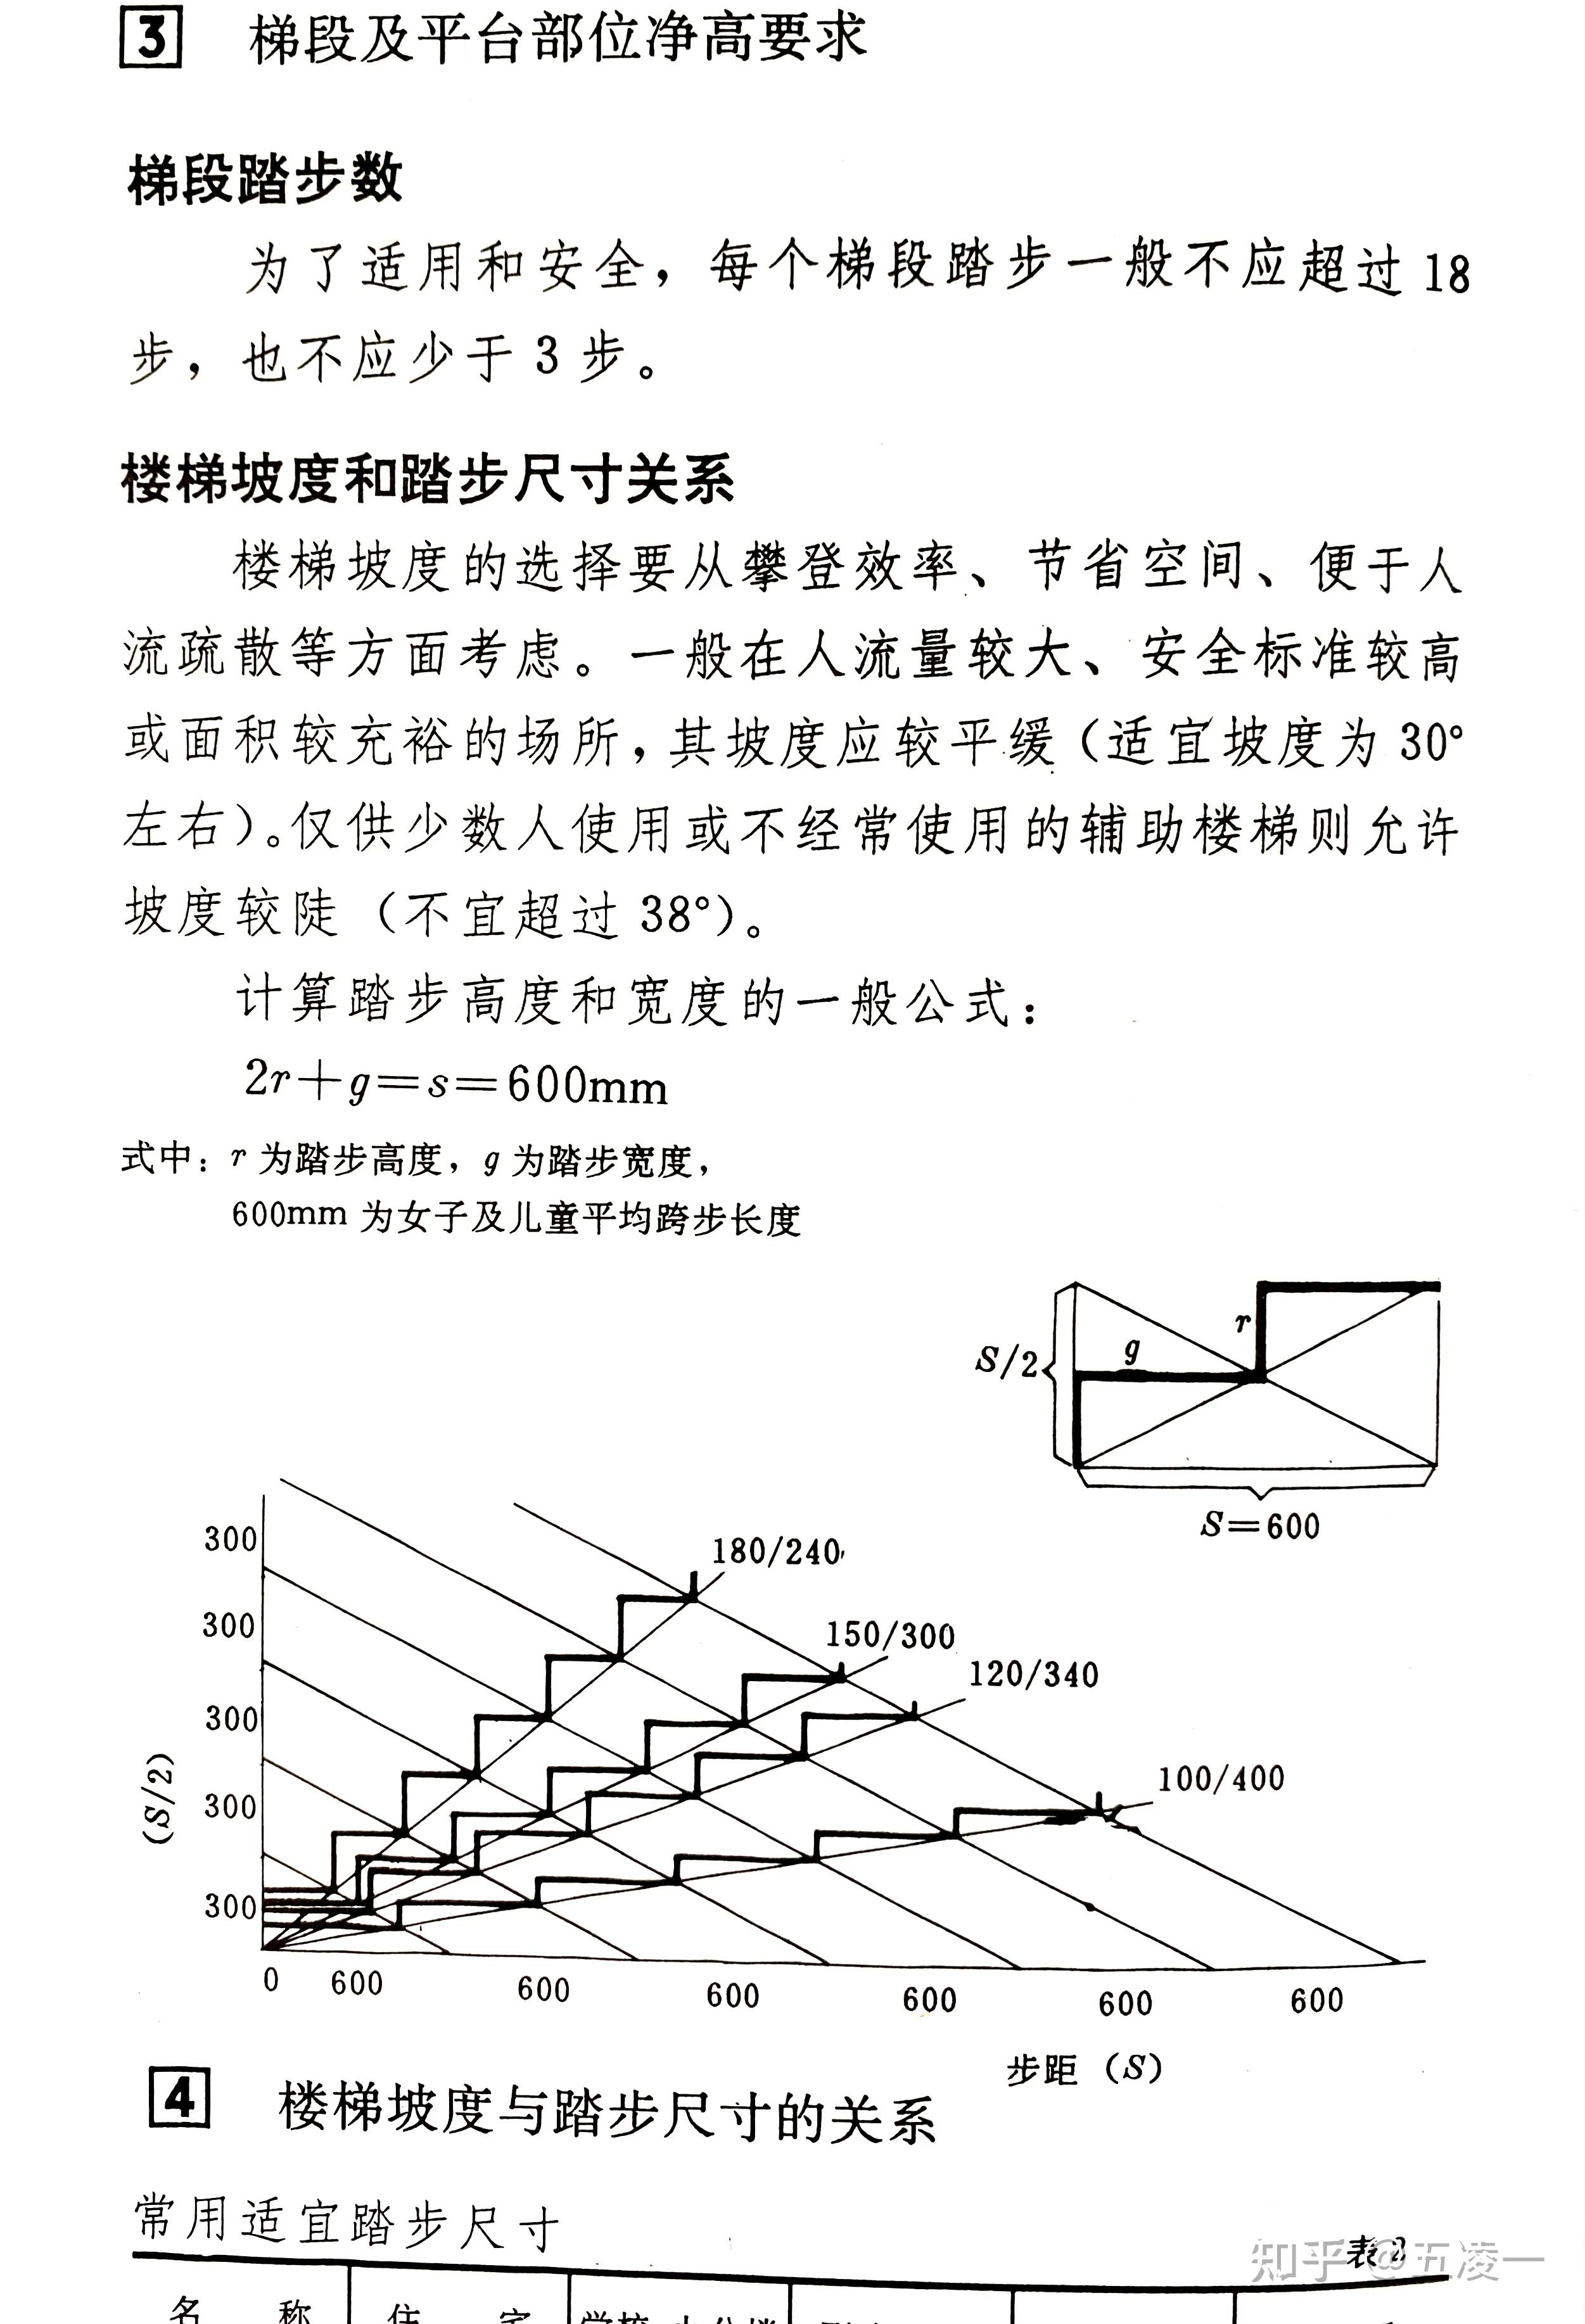 楼梯踏步的宽高关系为什么要满足2h b=600~620mm? 